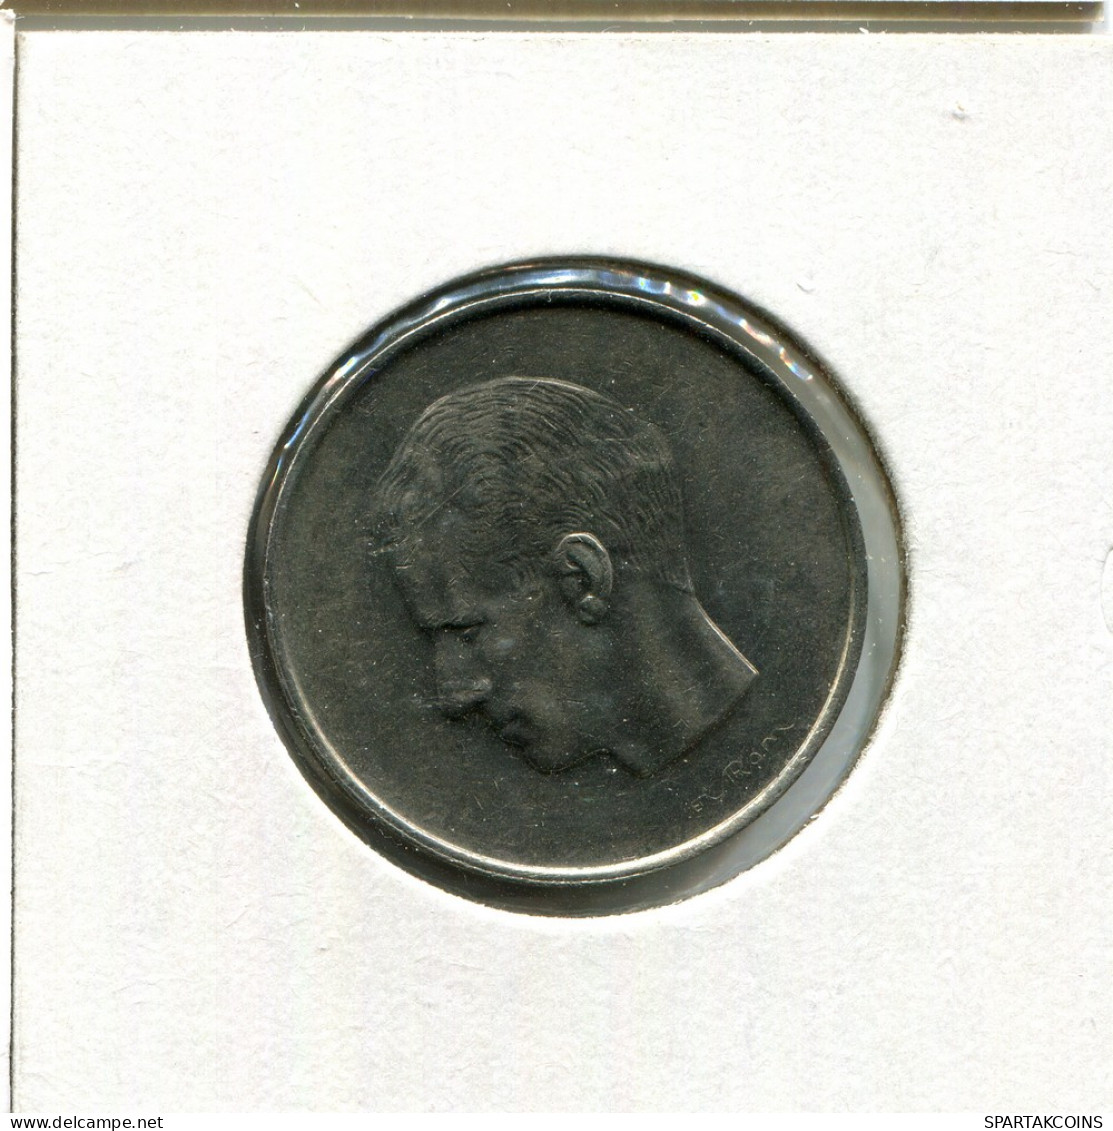 10 FRANCS 1970 DUTCH Text BELGIUM Coin #AU070.U - 10 Francs